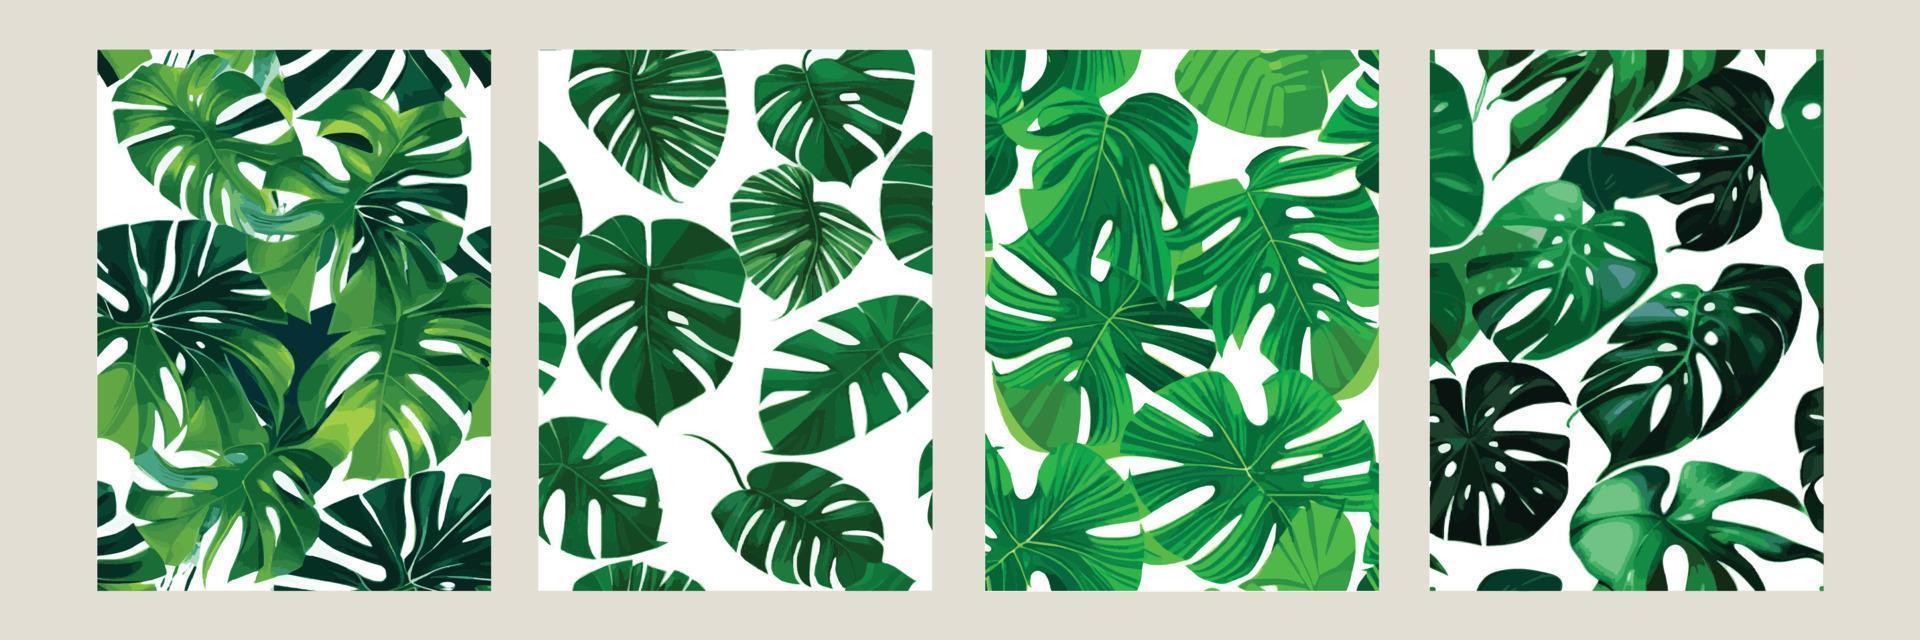 monstera verde como un patrón sobre un fondo blanco. patrón exótico con hojas tropicales. ilustración vectorial conjunto de carteles cuadrados vector